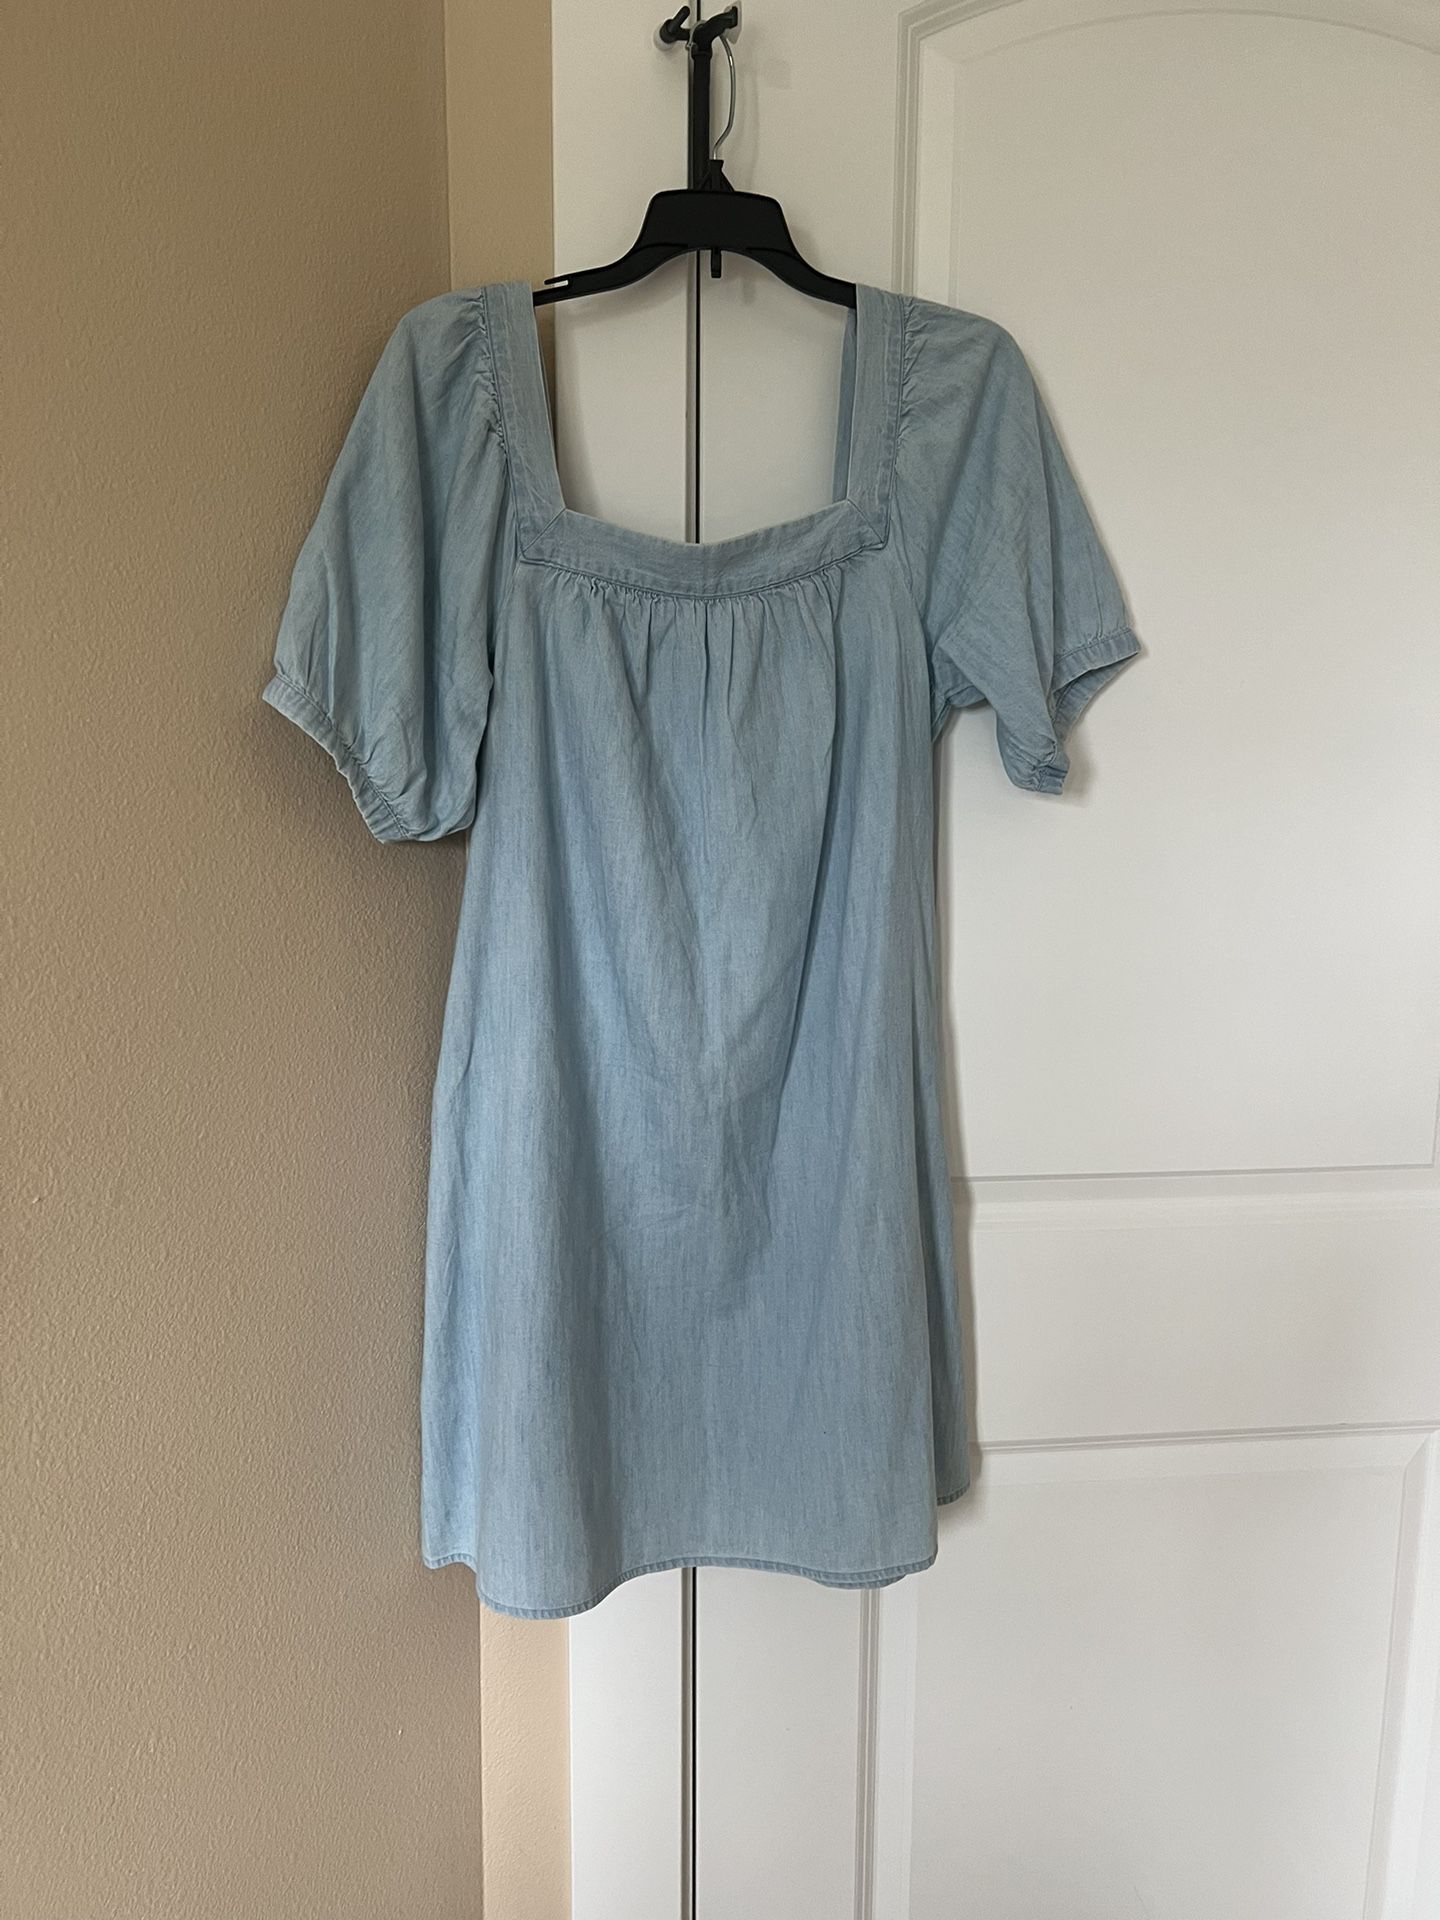 Old Navy, Blue Dress size-M, $8